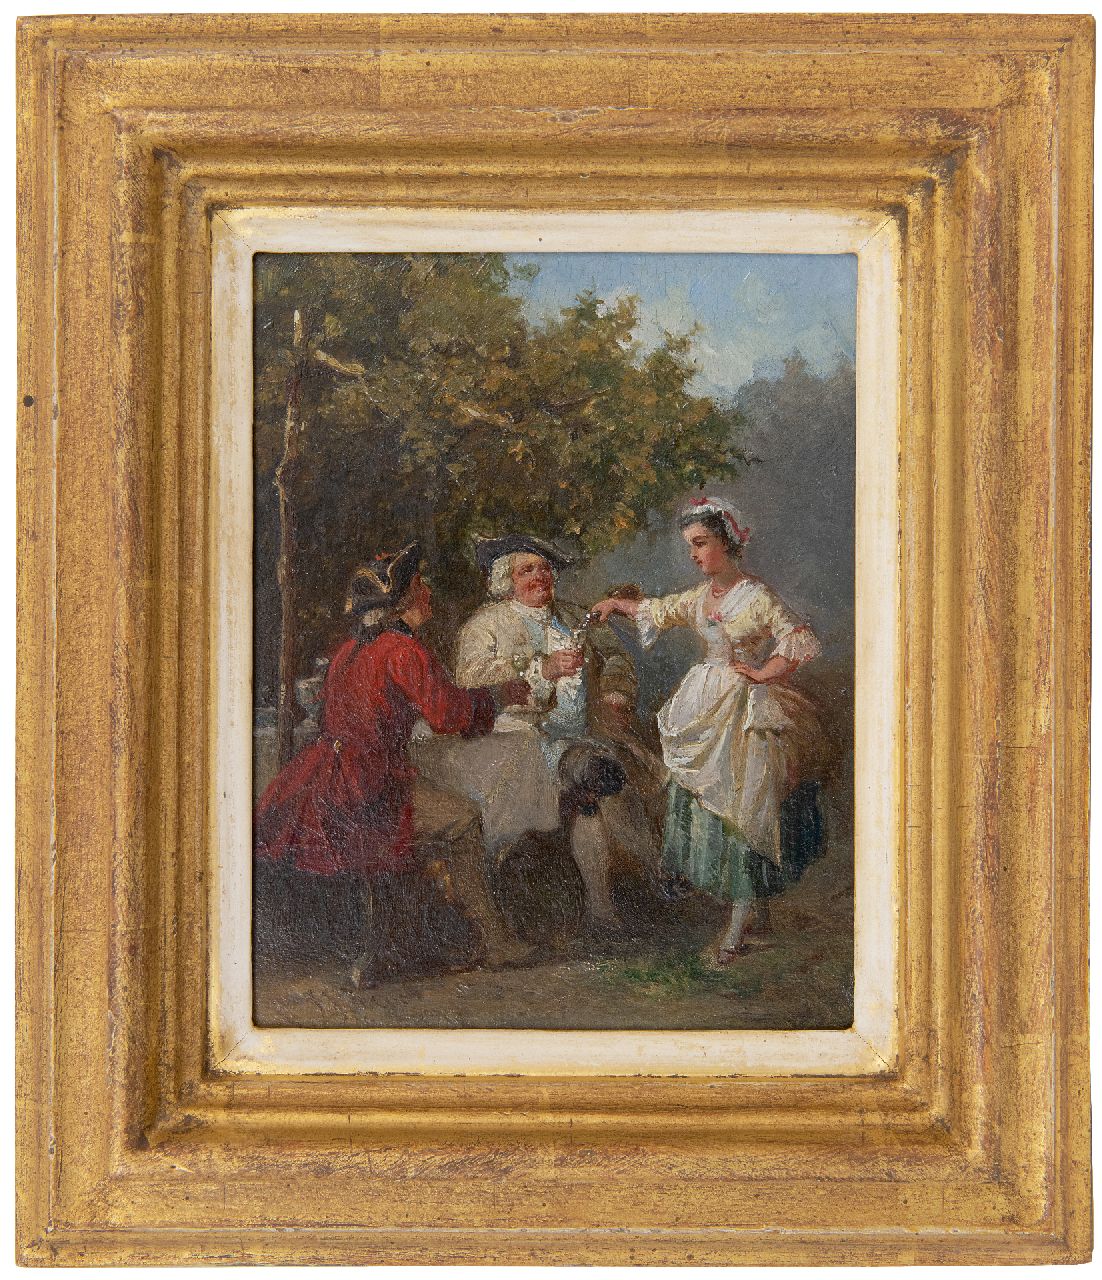 Zuidema Broos J.J.  | Jan Jacob Zuidema Broos | Schilderijen te koop aangeboden | Landelijke geneugten, olieverf op paneel 19,0 x 14,8 cm, gesigneerd linksonder